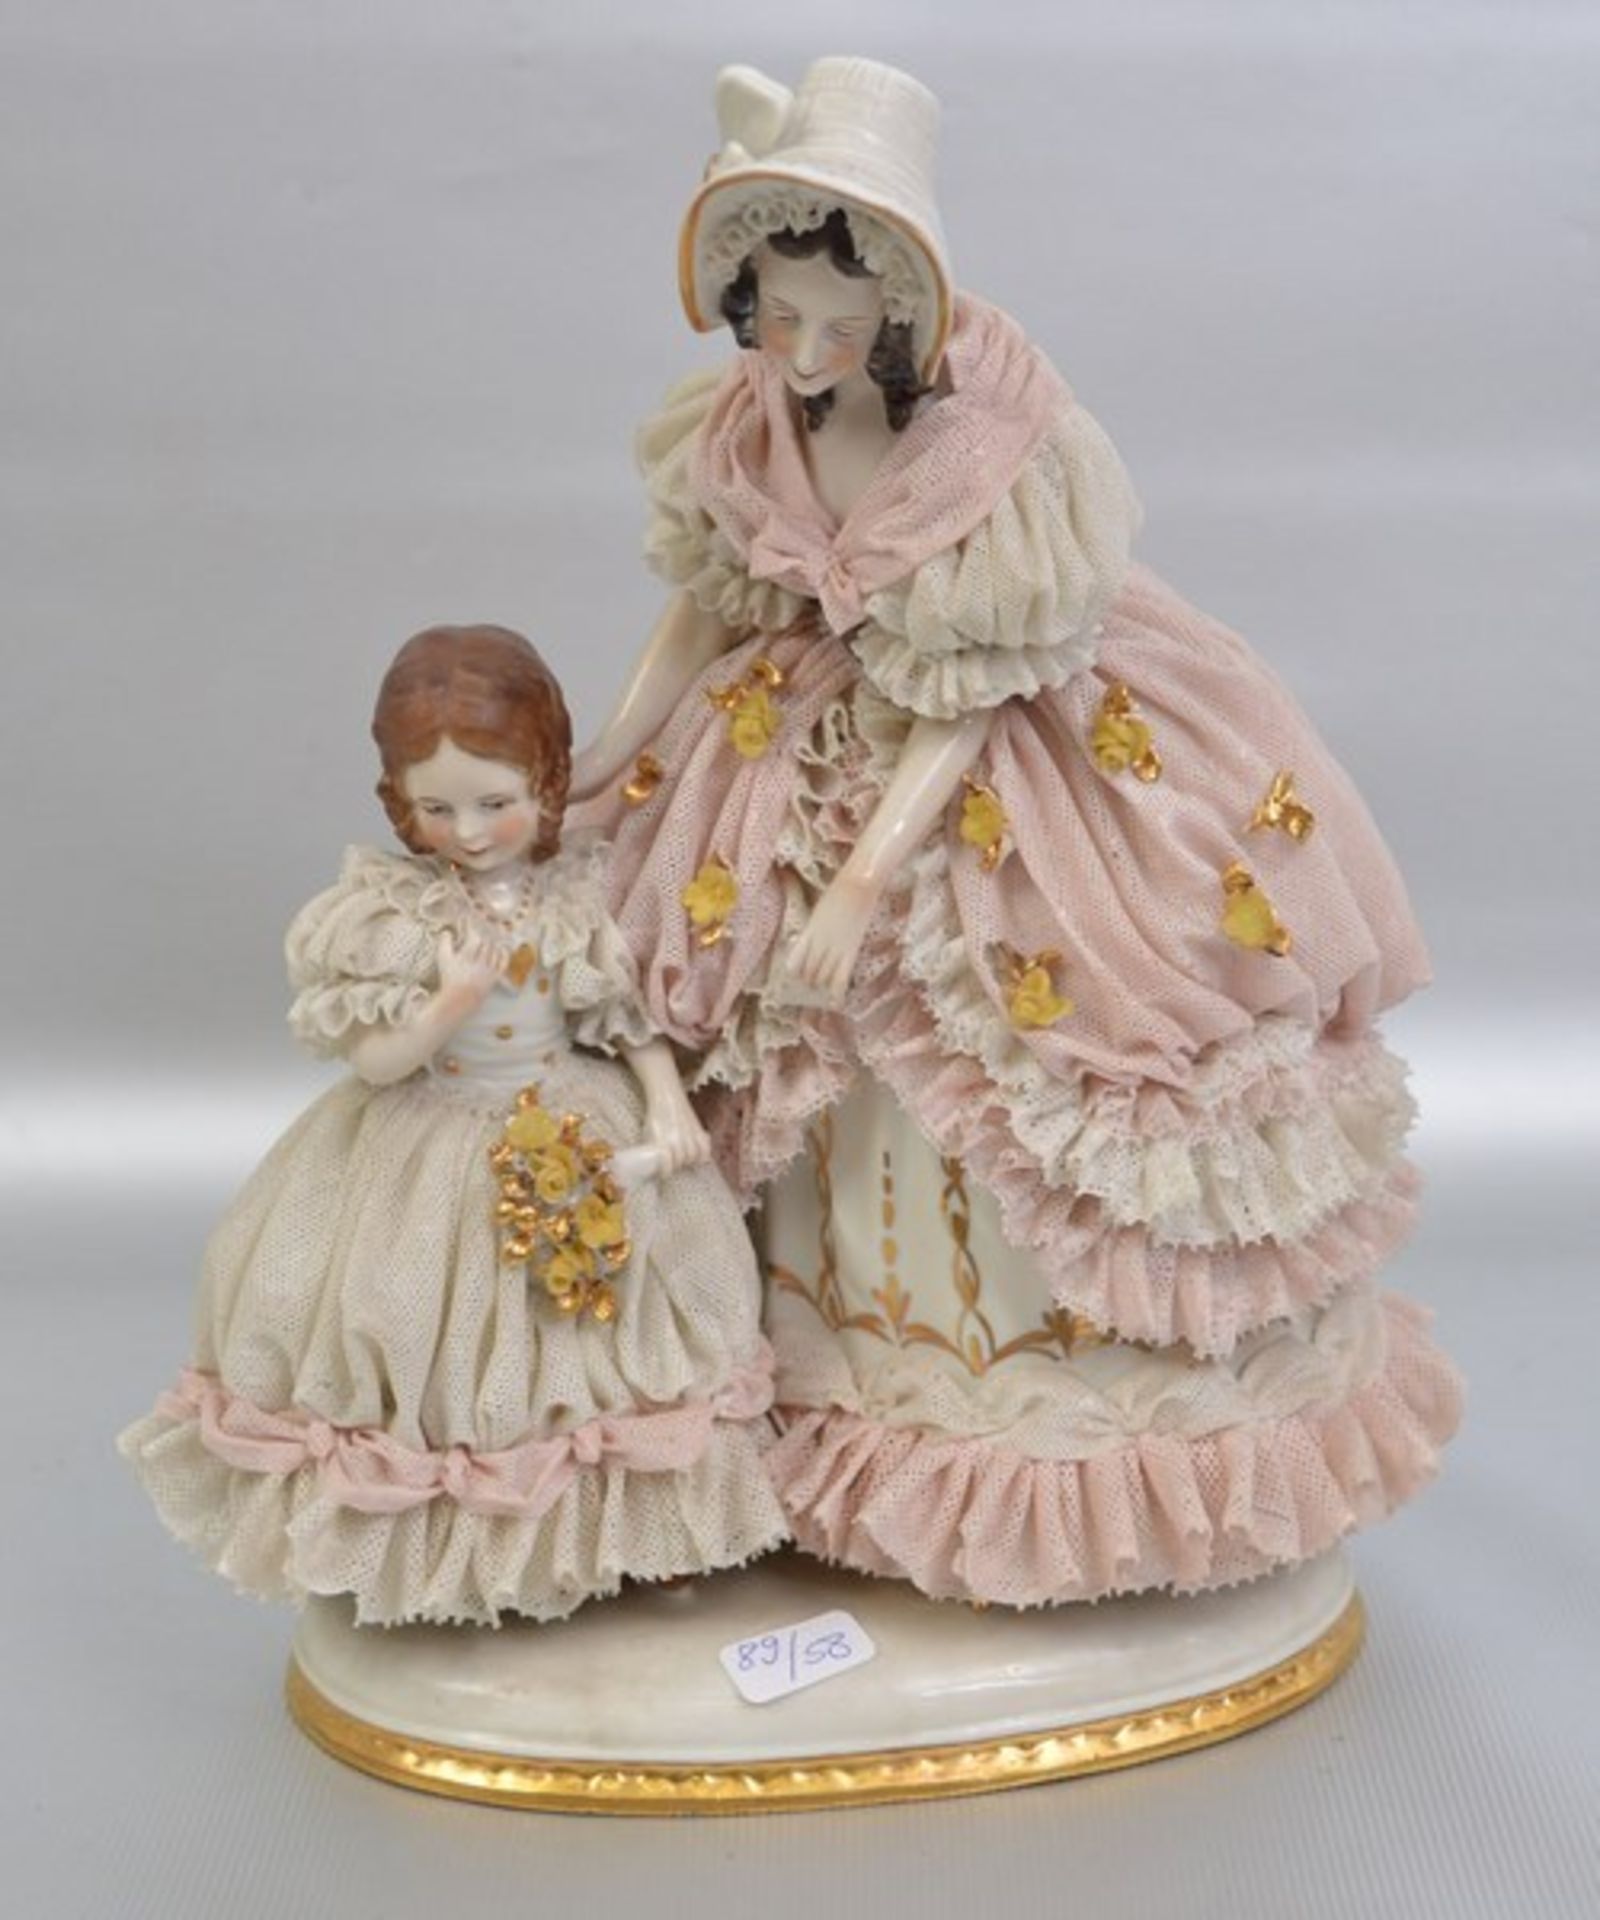 Elegante Dame mit Kind auf ovalem gold verzierten Sockel stehend, Dame und Kind im Tüllkleid, bunt